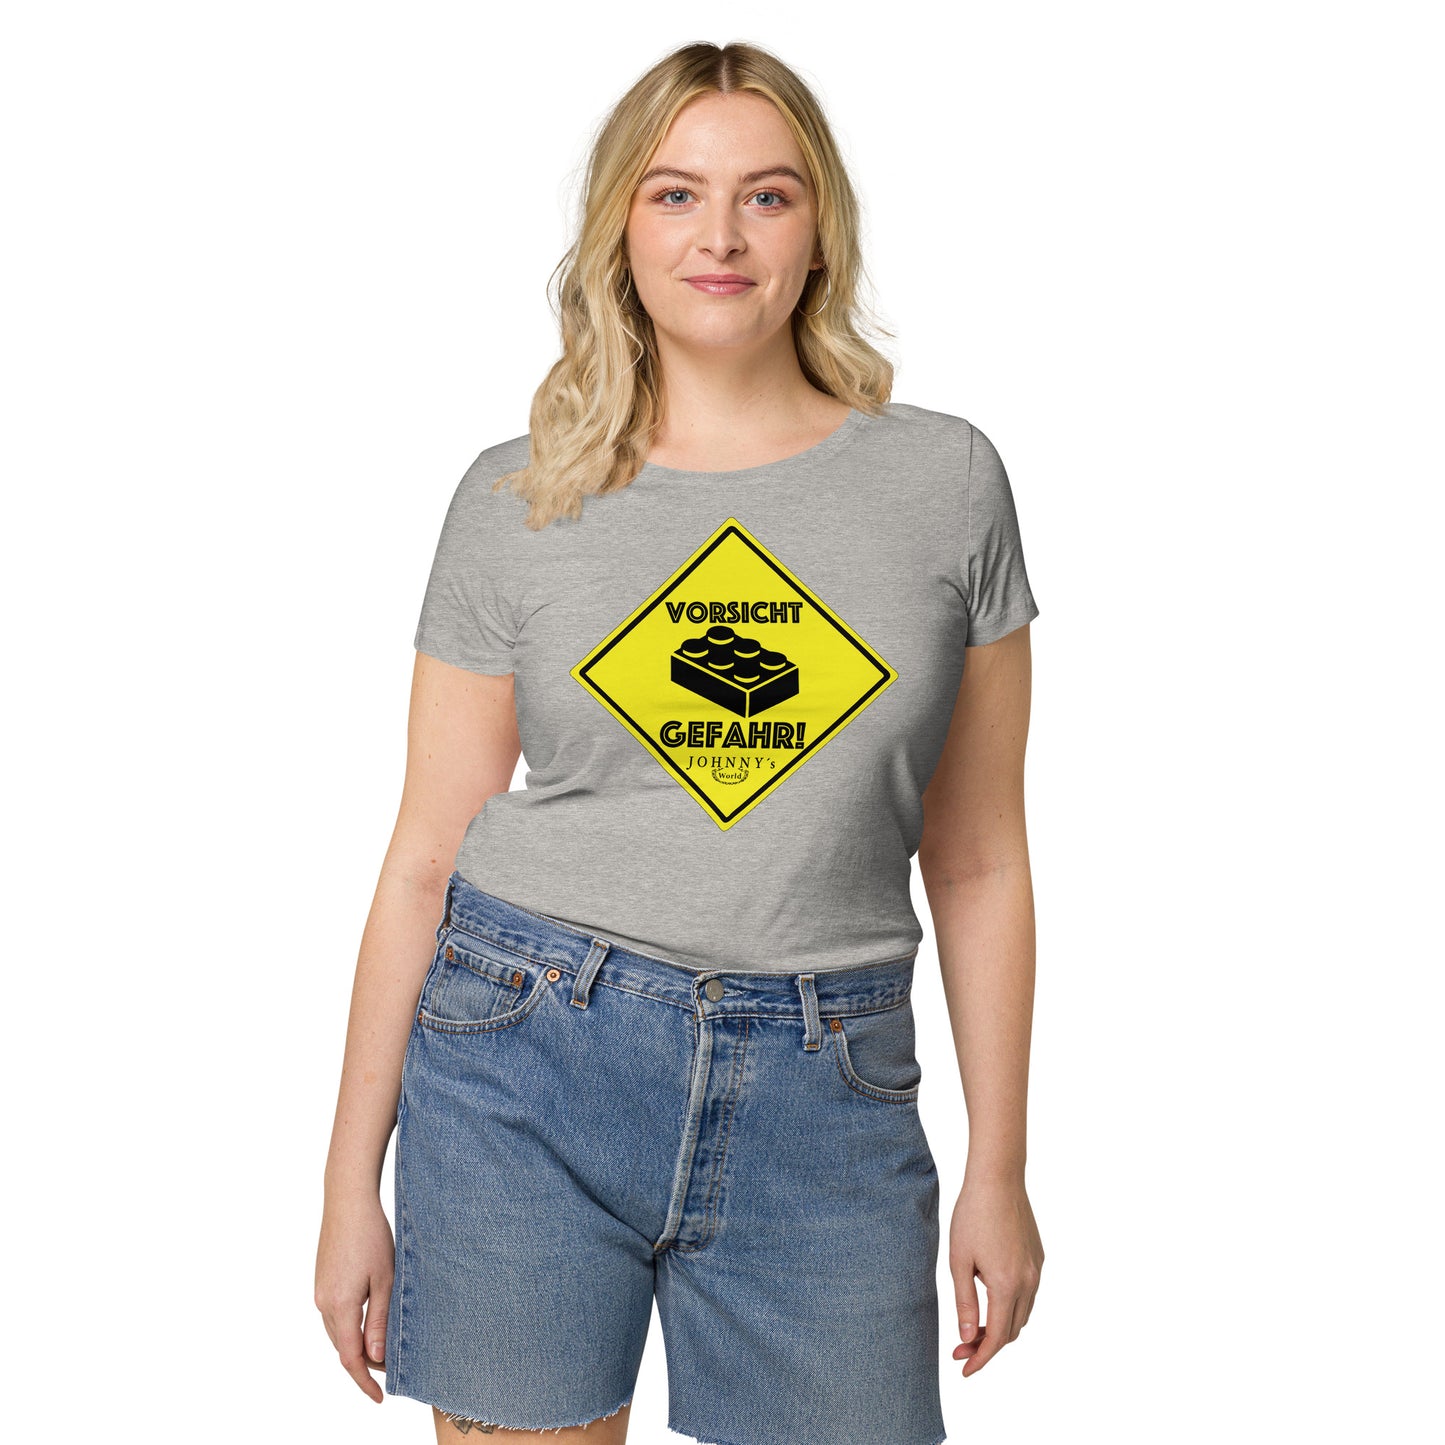 "Vorsicht Gefahr" Mädels T-Shirt